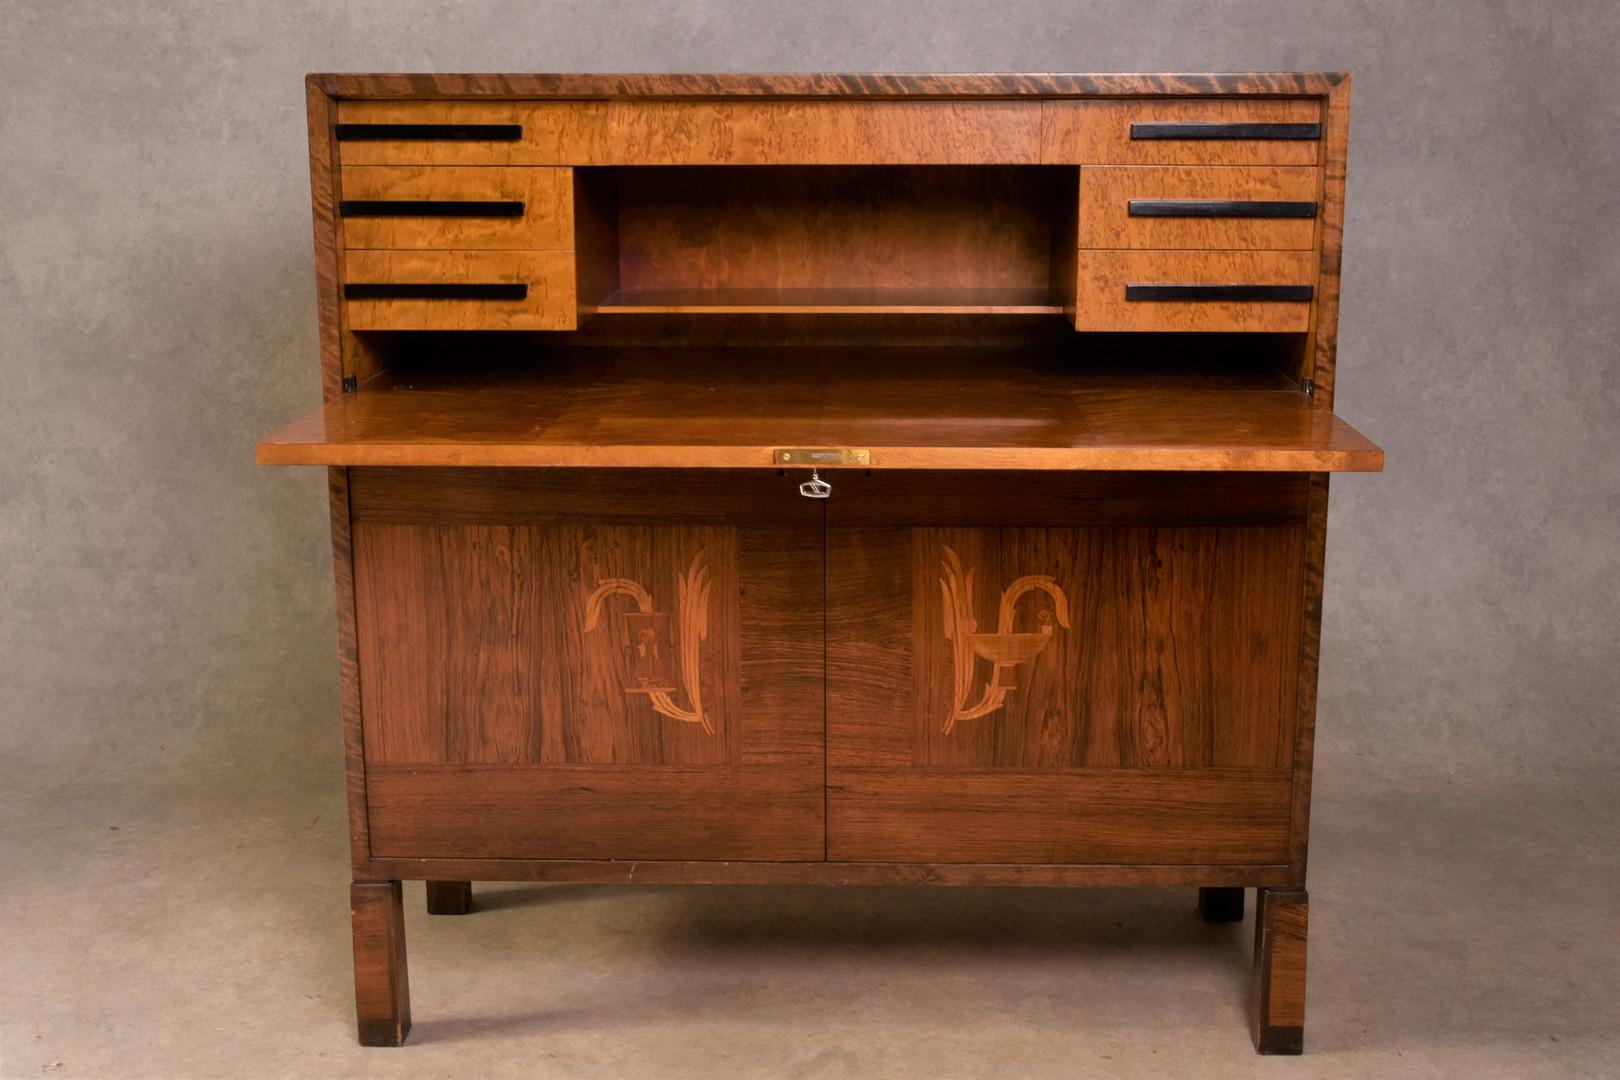 Cette armoire moderne suédoise a été conçue par Axel Larsson (1898-1975). Il est doté d'un rabat d'écriture et possède une serrure et une clé (clé incluse). L'armoire est en bois de bouleau et de chêne, avec un placage en orme. 
Un exemple